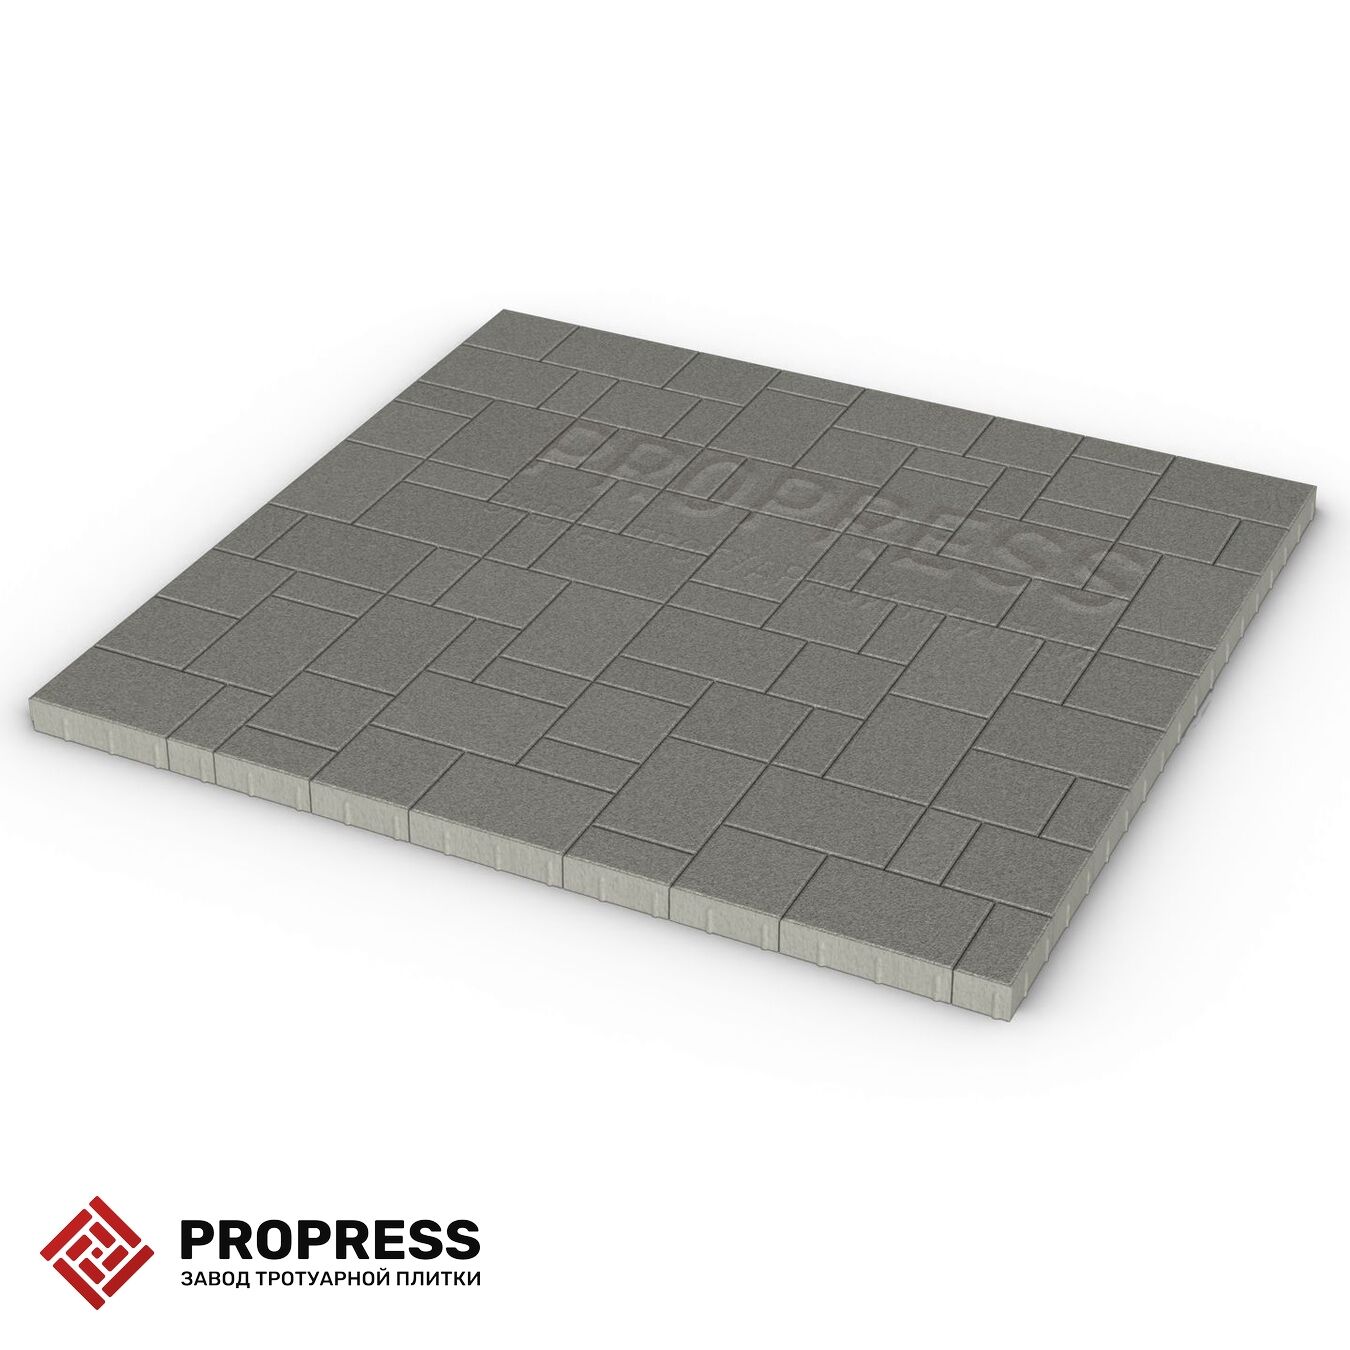 Тротуарная плитка Пропресс Лэндхаус Серый мрамор 60 мм